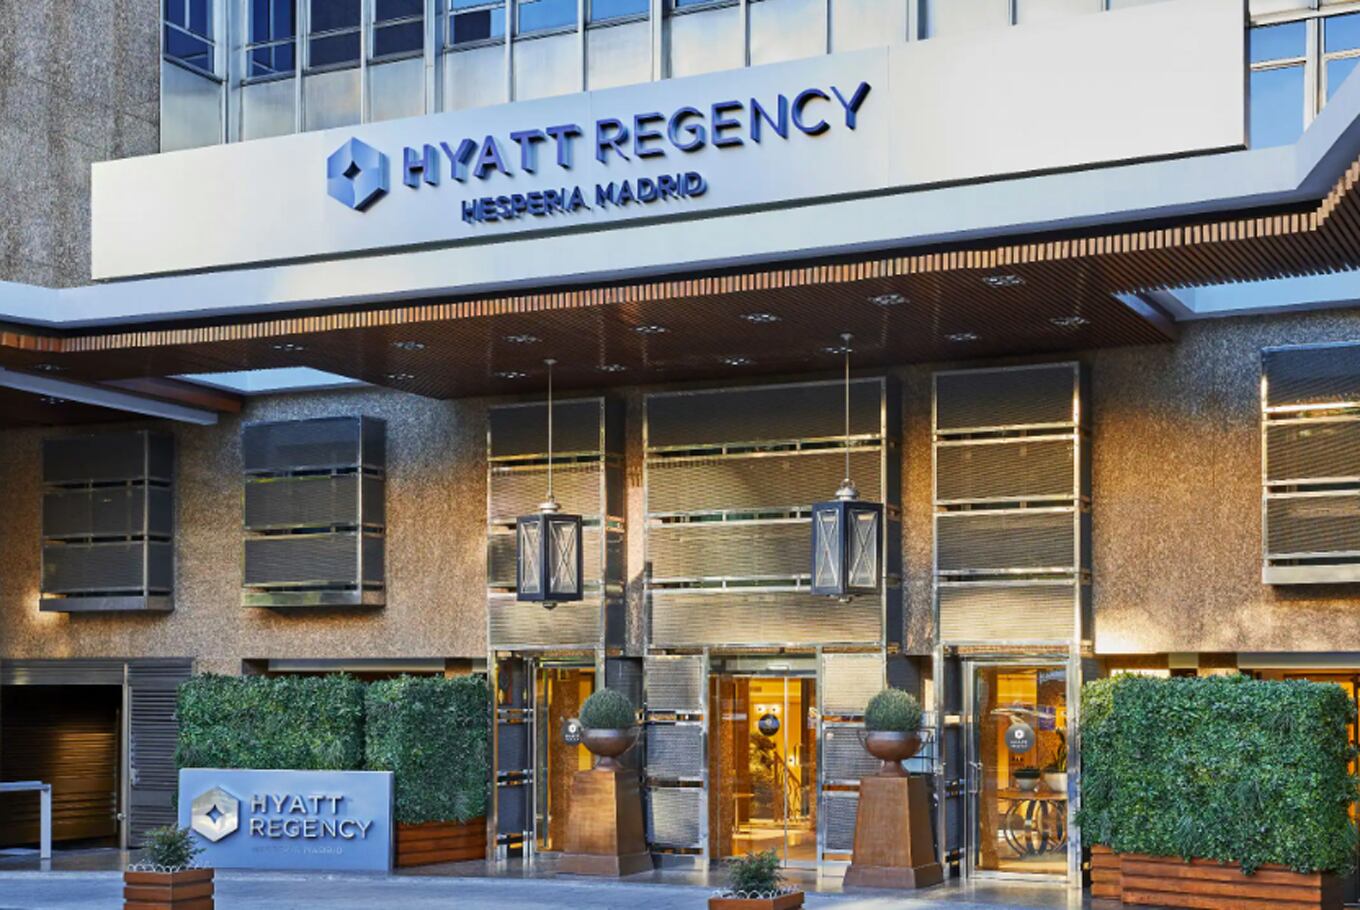 El Hotel Hyatt Regency donde se aloja Javier MIlei en Madrid